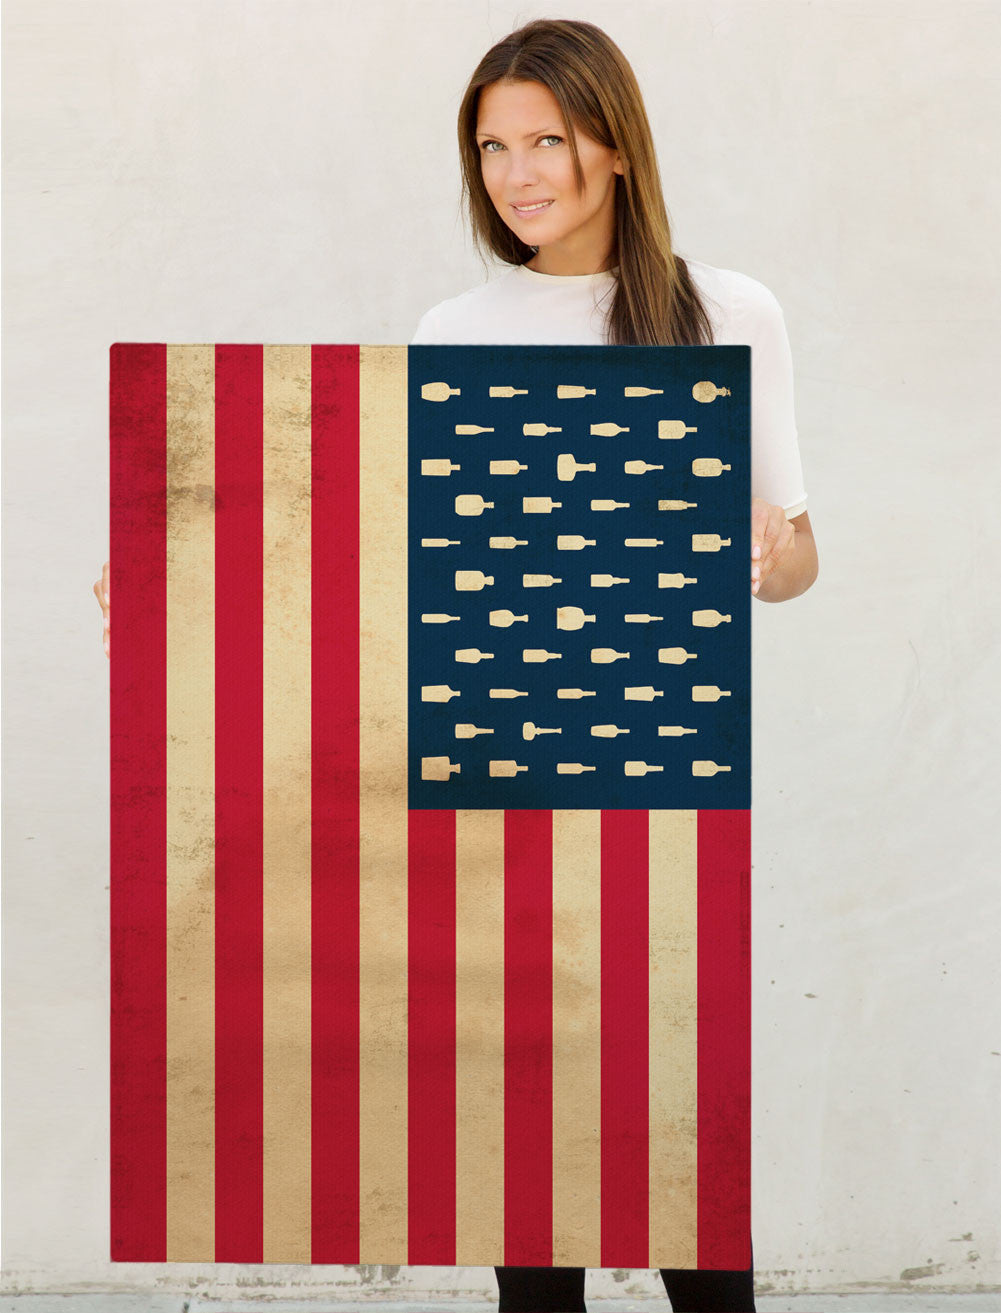 Bourbon Patriot Flag – 24x36" Canvas Wrap